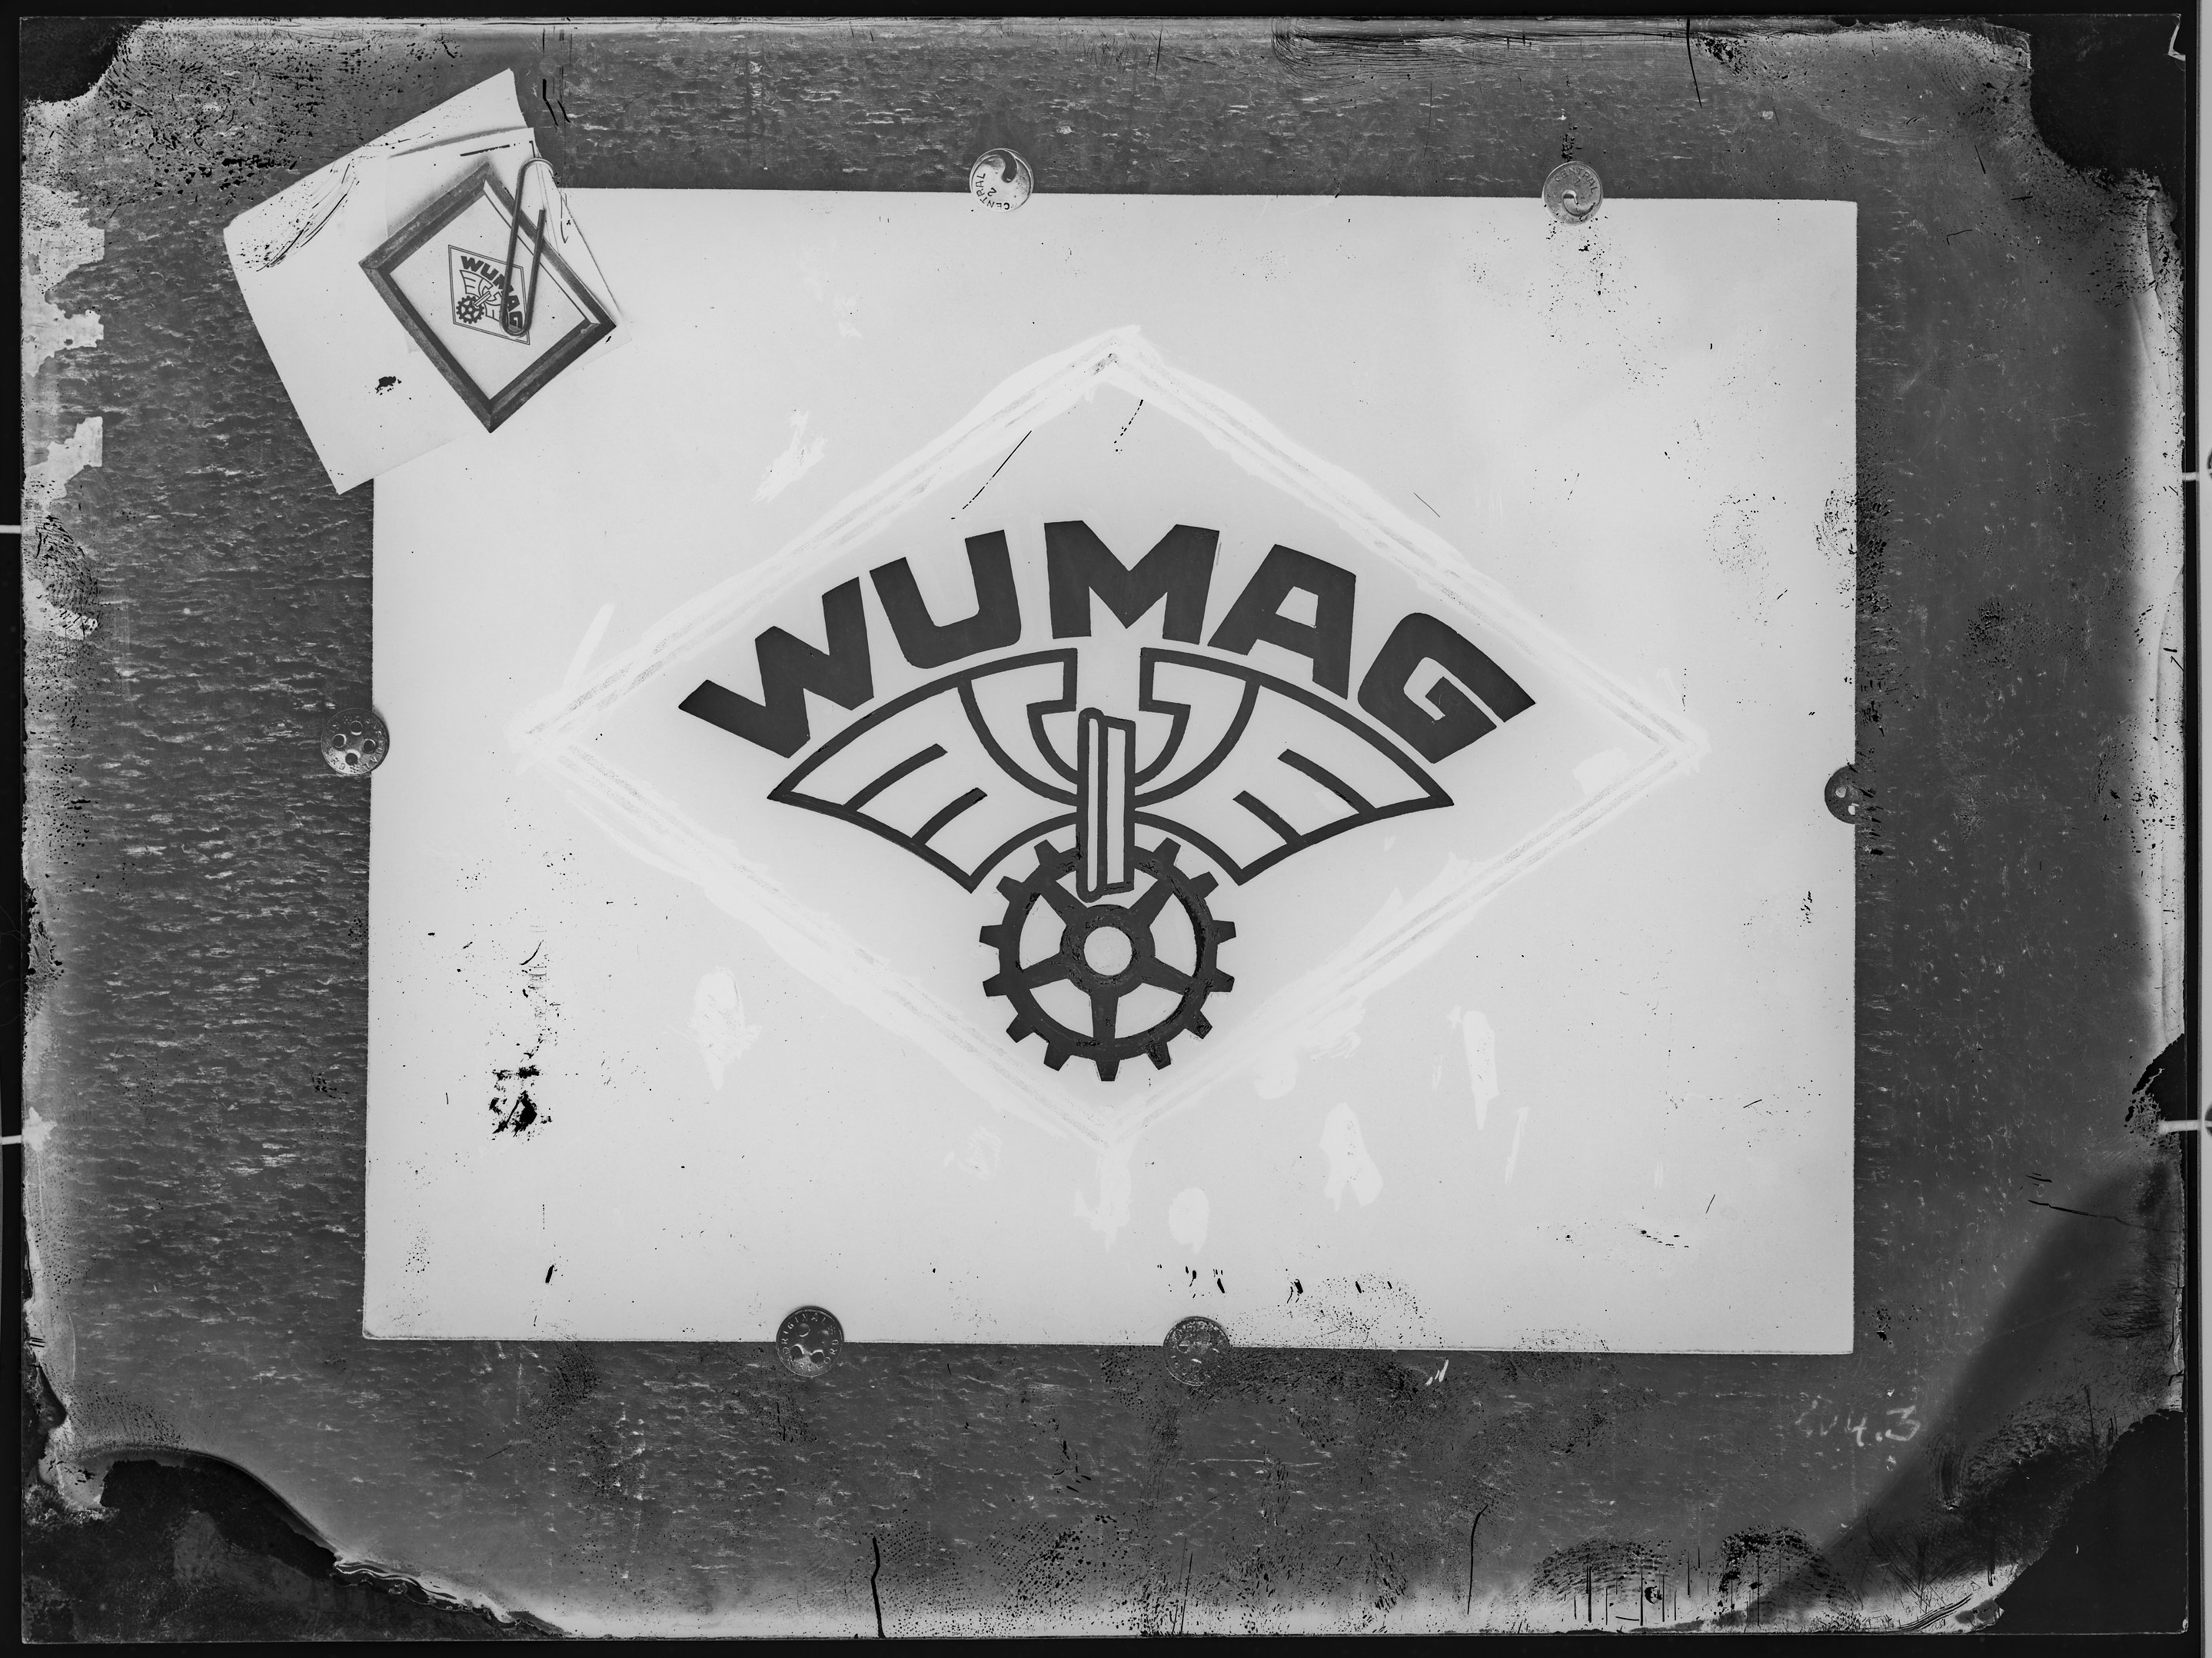 Fotografie: Entwurfszeichnung für Firmenzeichen der Waggonfabrik Görlitz Aktiengesellschaft (WUMAG), 1921 - 1946? (Verkehrsmuseum Dresden CC BY-NC-SA)